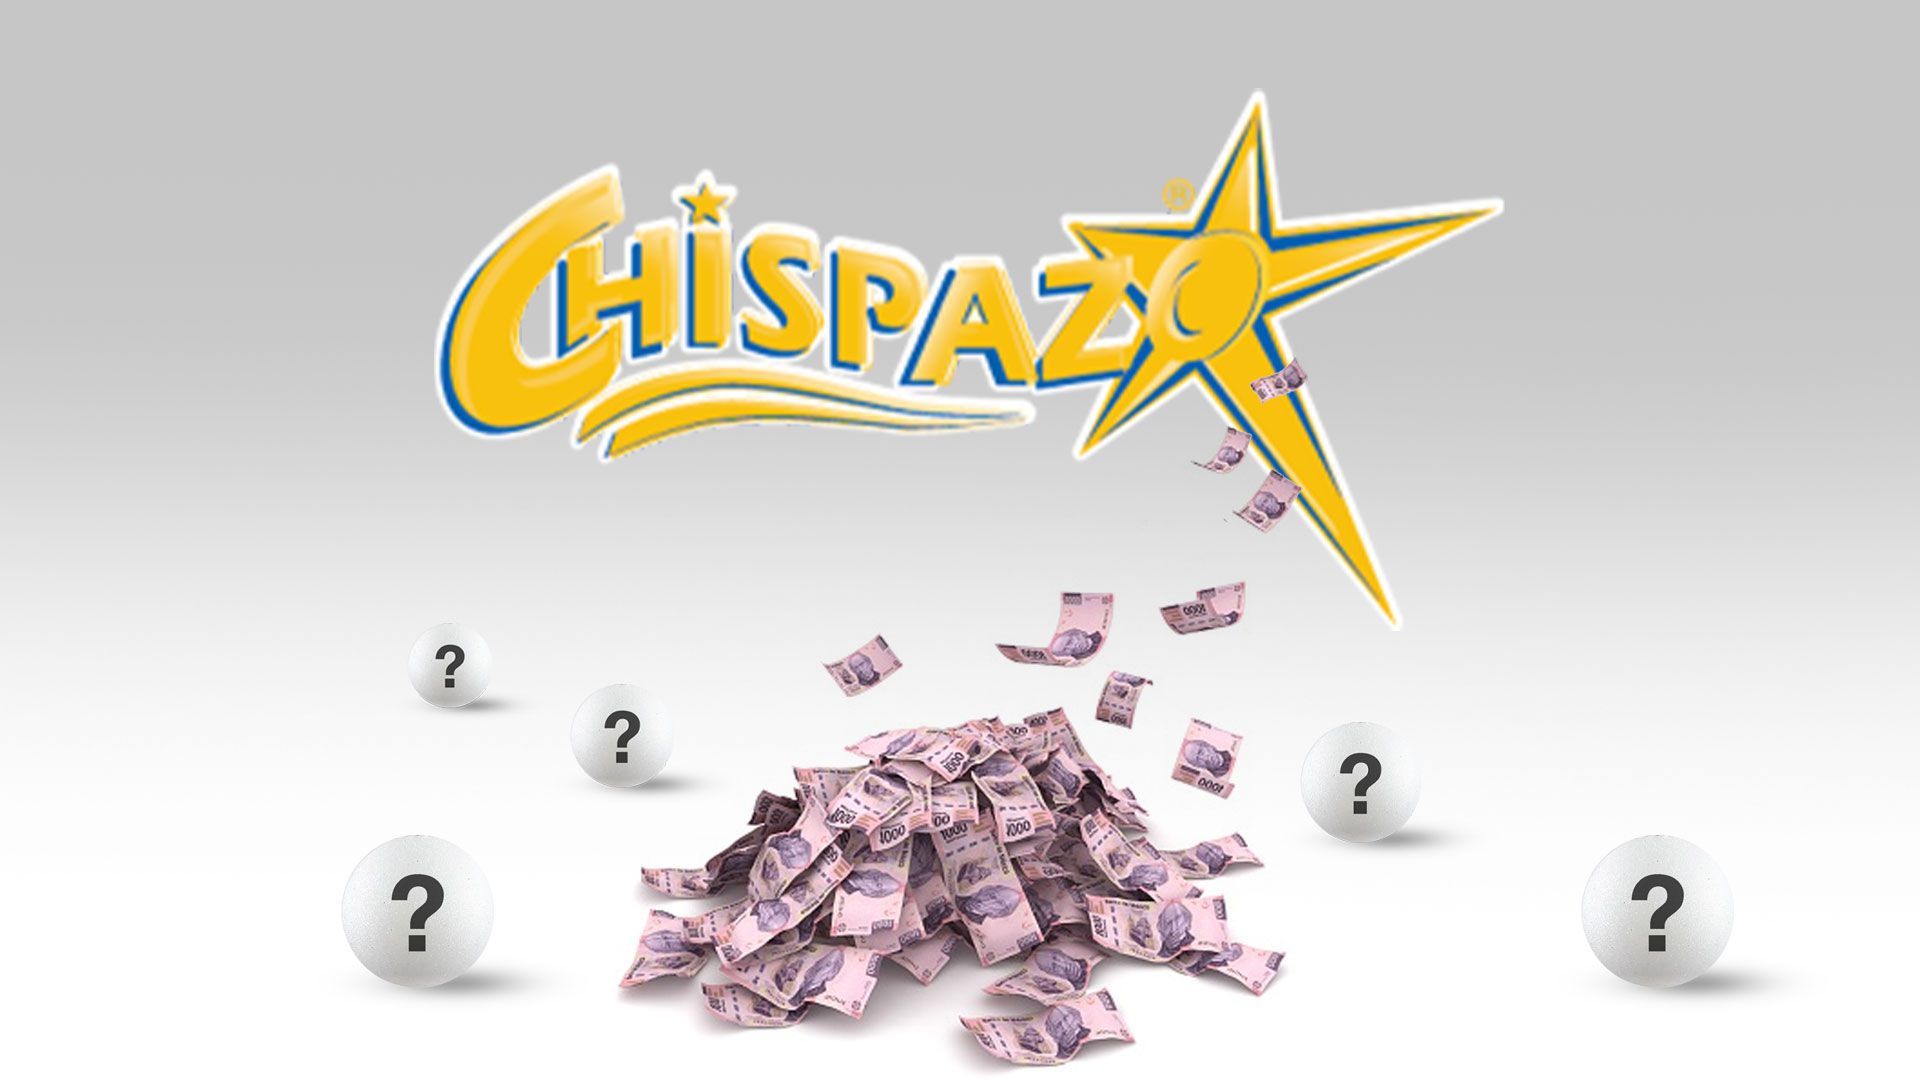 En el sorteo de hoy, Chipazo entregó $702,800.94 pesos (Infobae/Jovani Pérez)